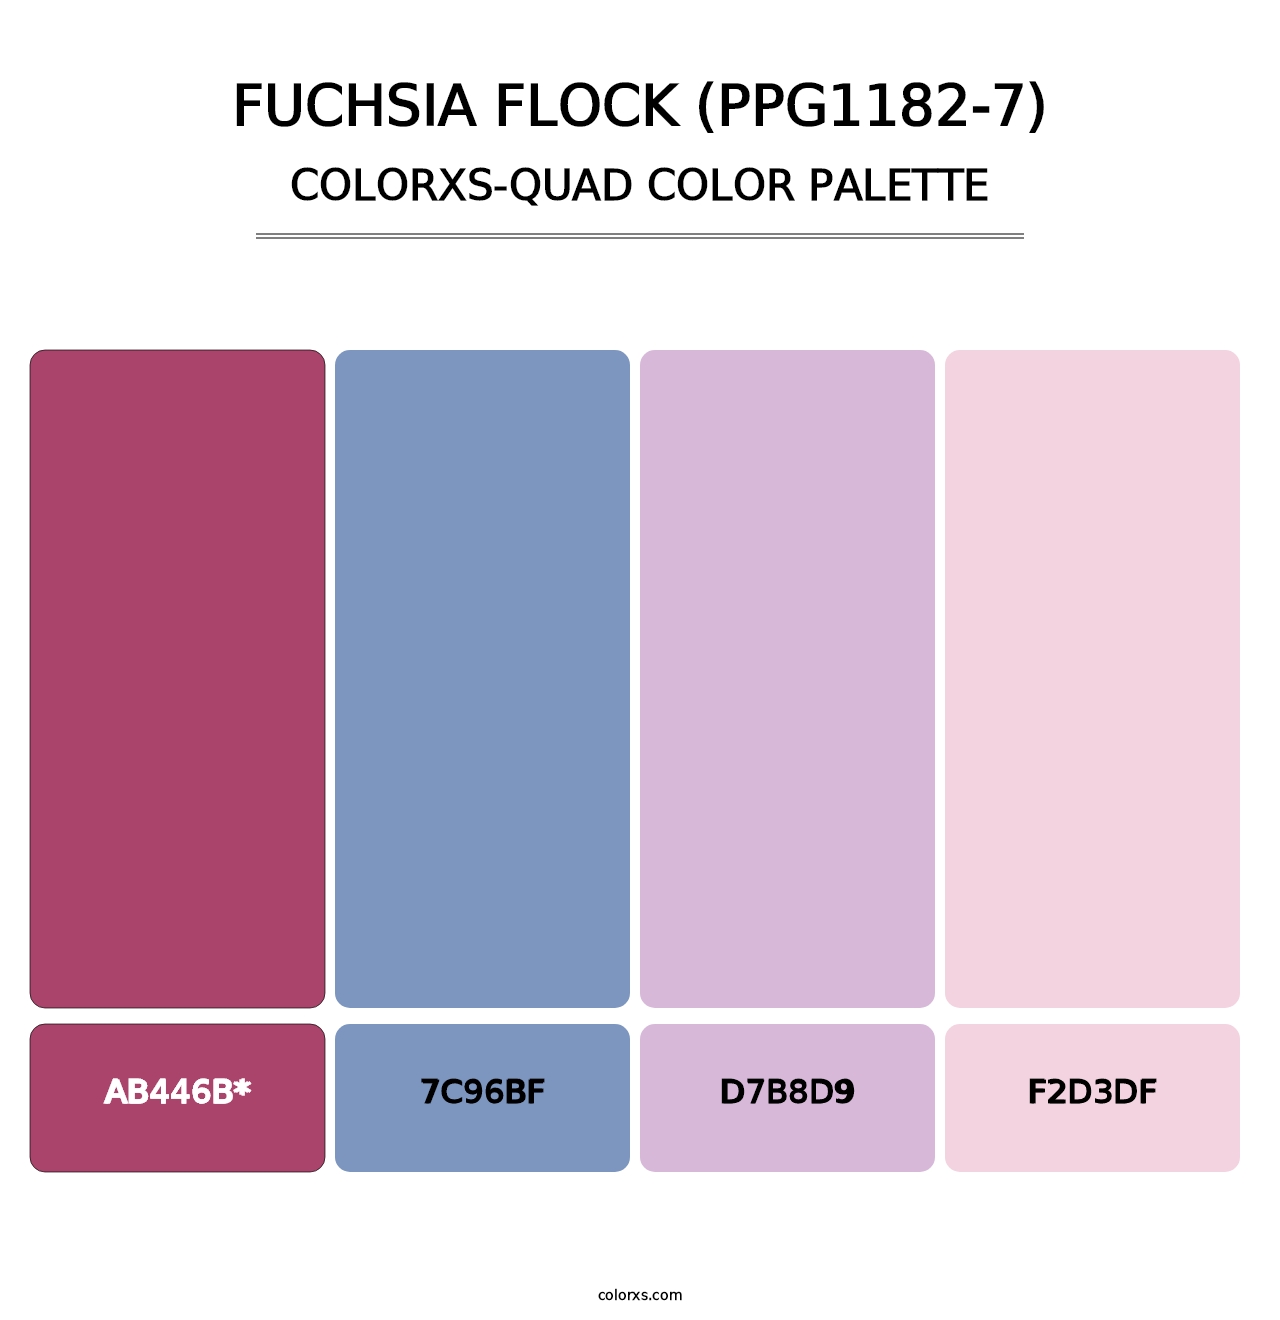 Fuchsia Flock (PPG1182-7) - Colorxs Quad Palette